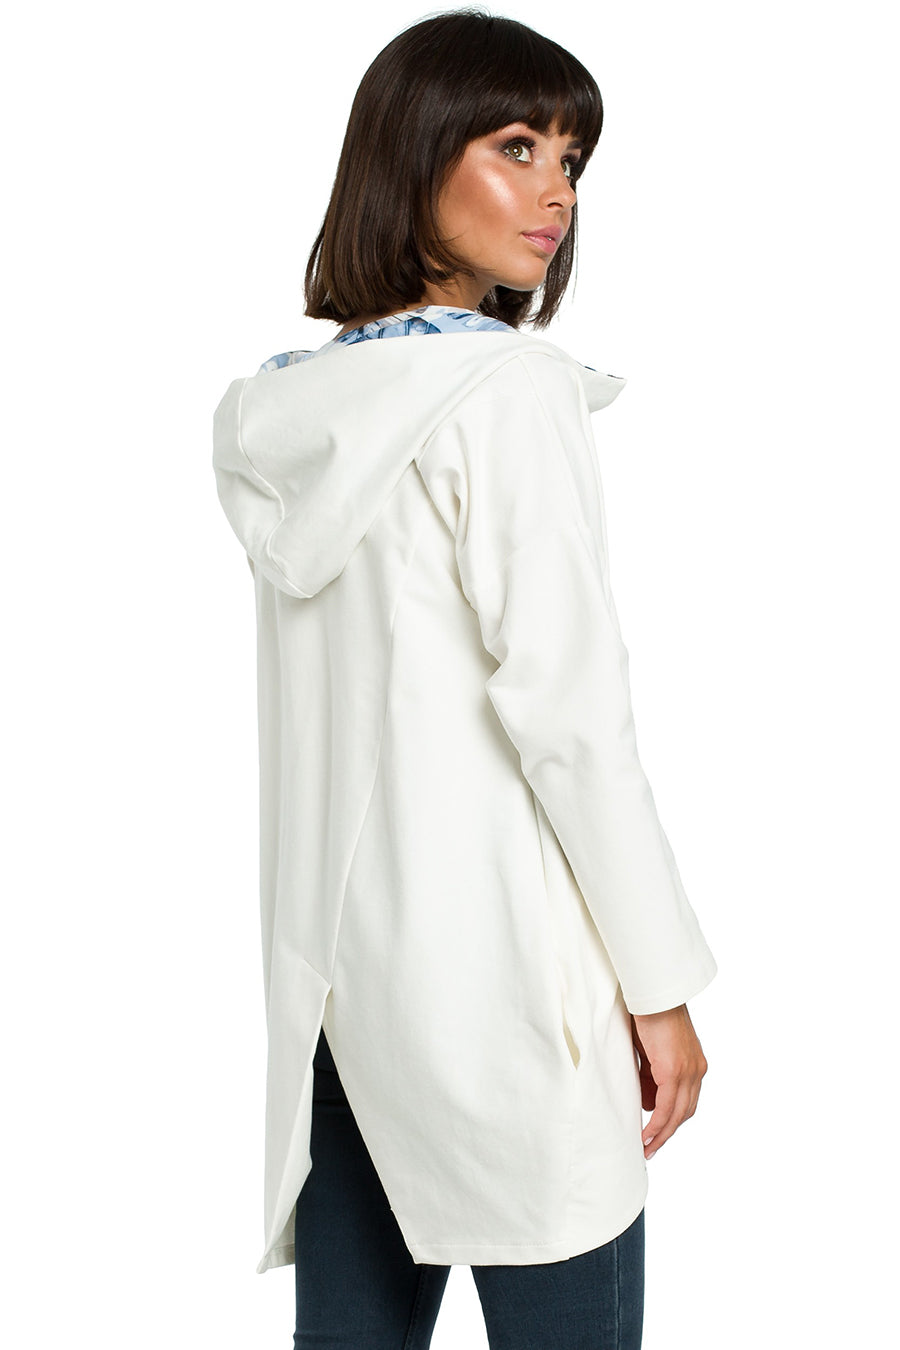 Γυναικείο φούτερ με κουκούλα Sevgi, Λευκό 4